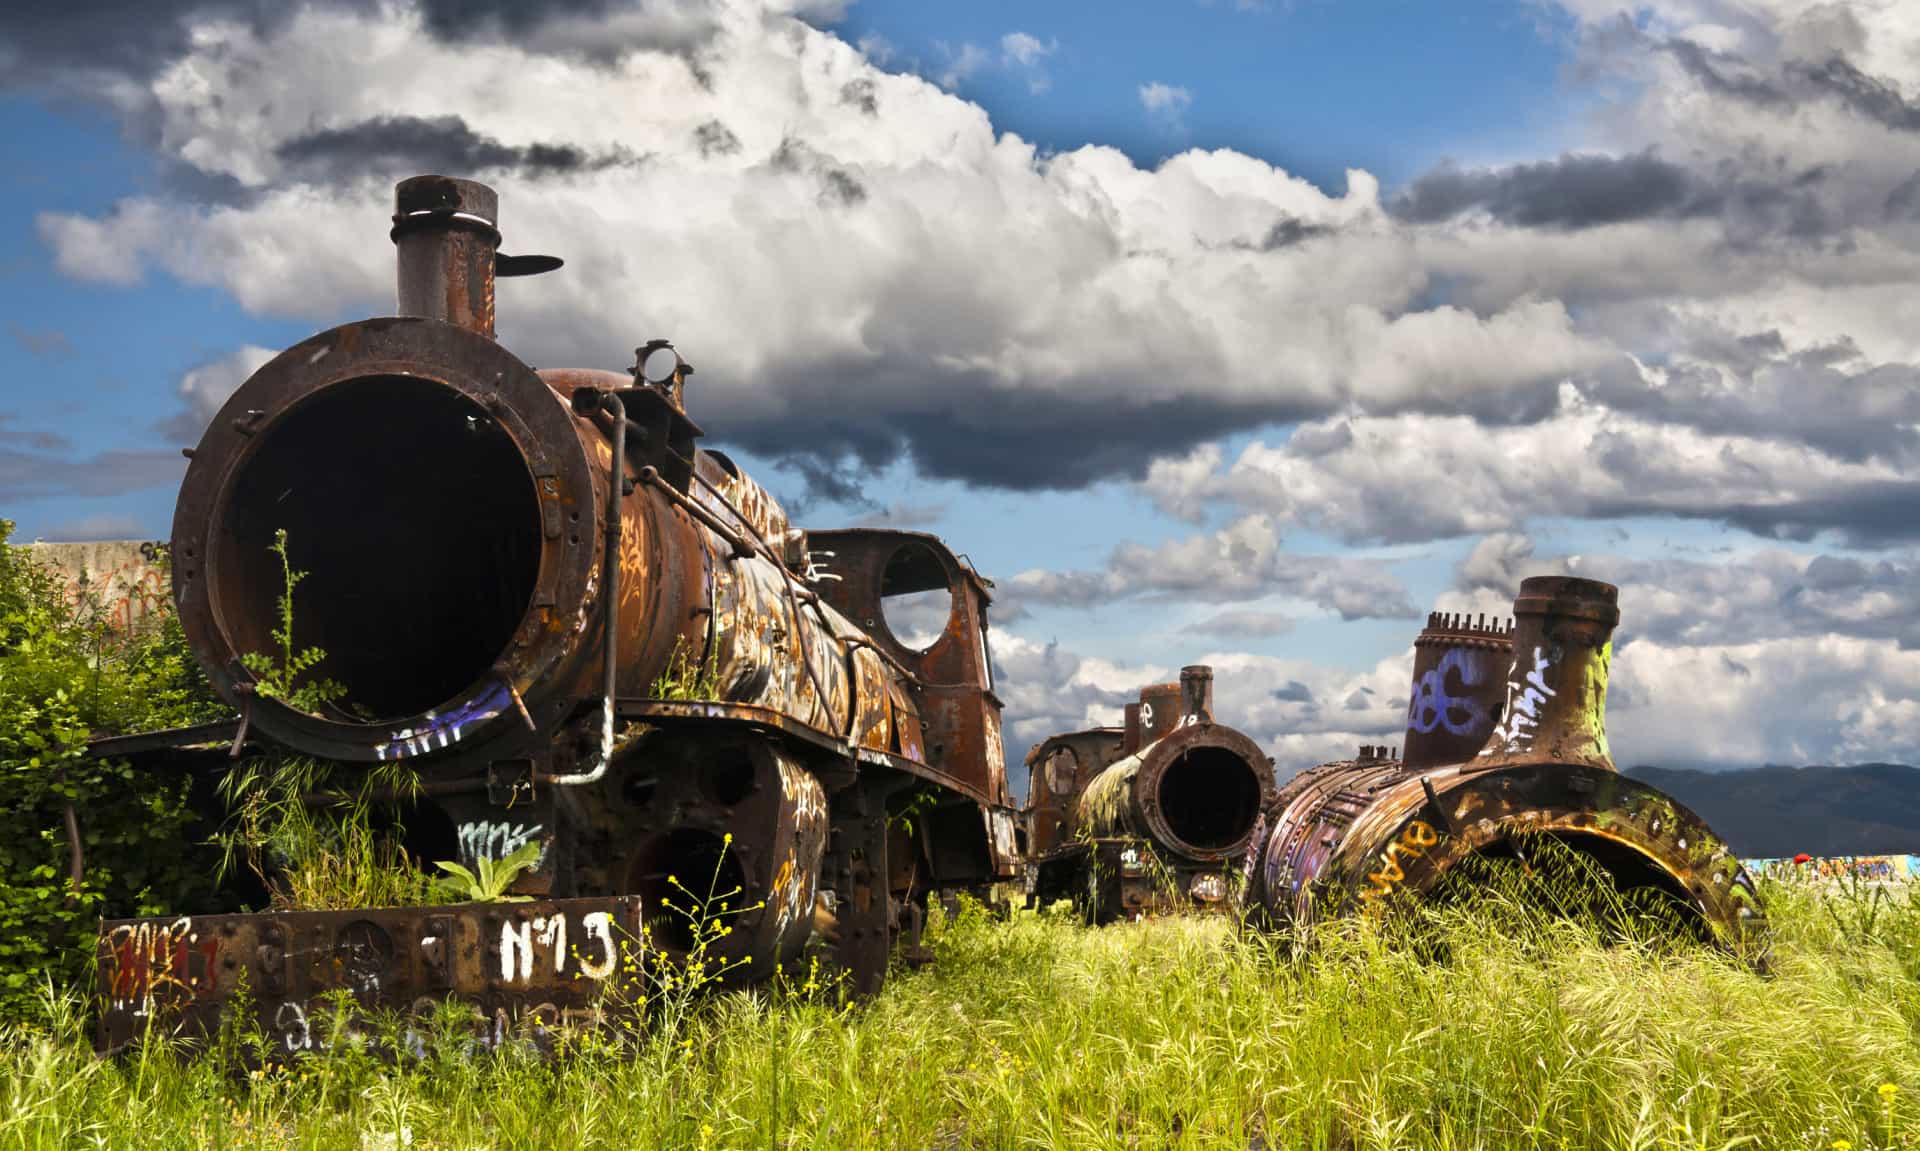 La ville de Ponferrada, en Espagne, attire de nombreux touristes venus photographier ses trains abandonnés.